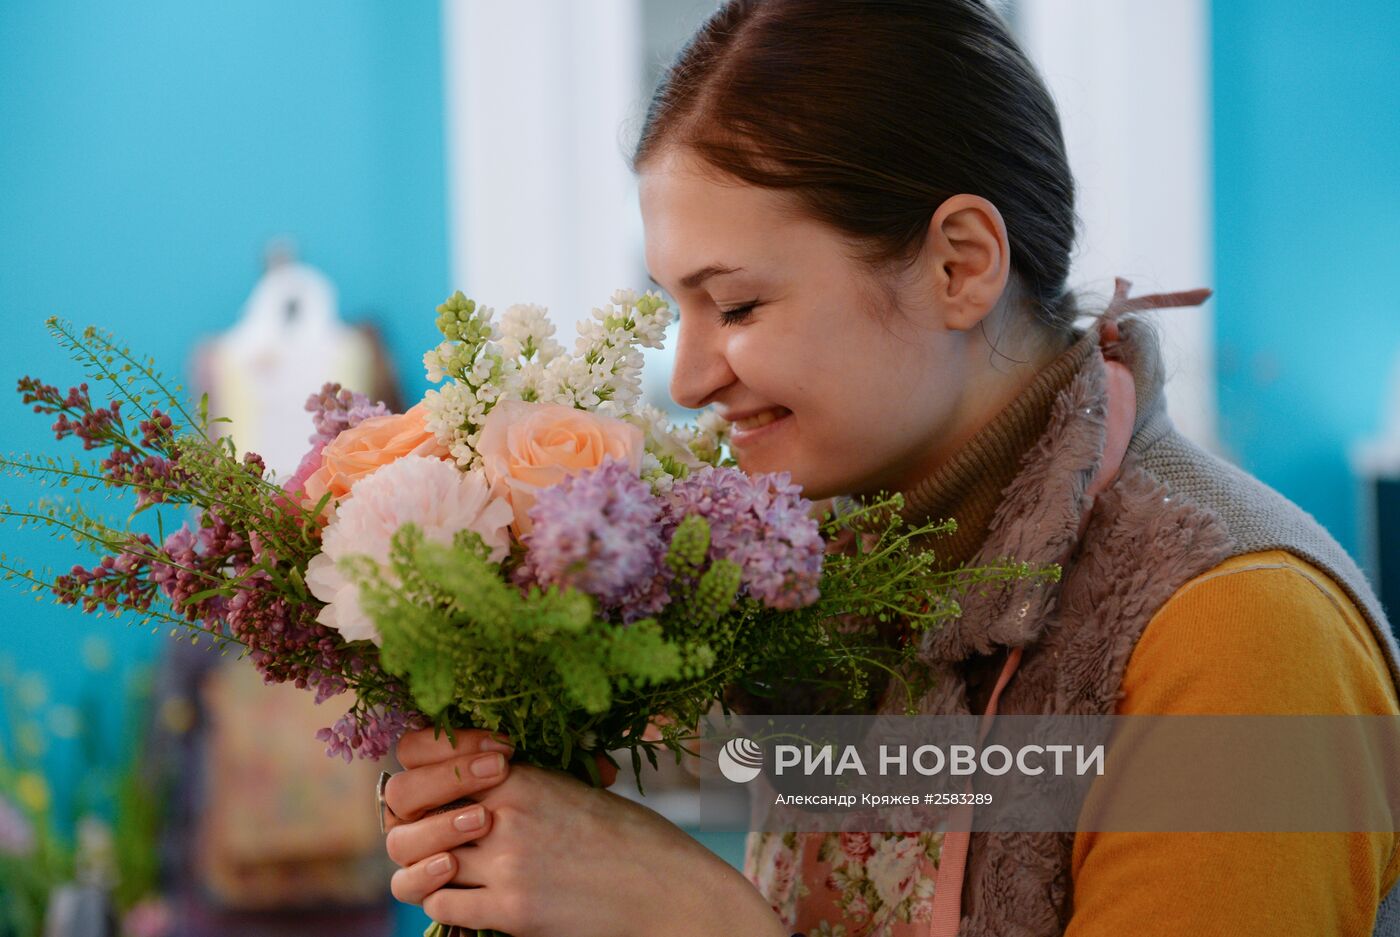 Продажа цветов в преддверии праздника 8 марта в Новосибирске